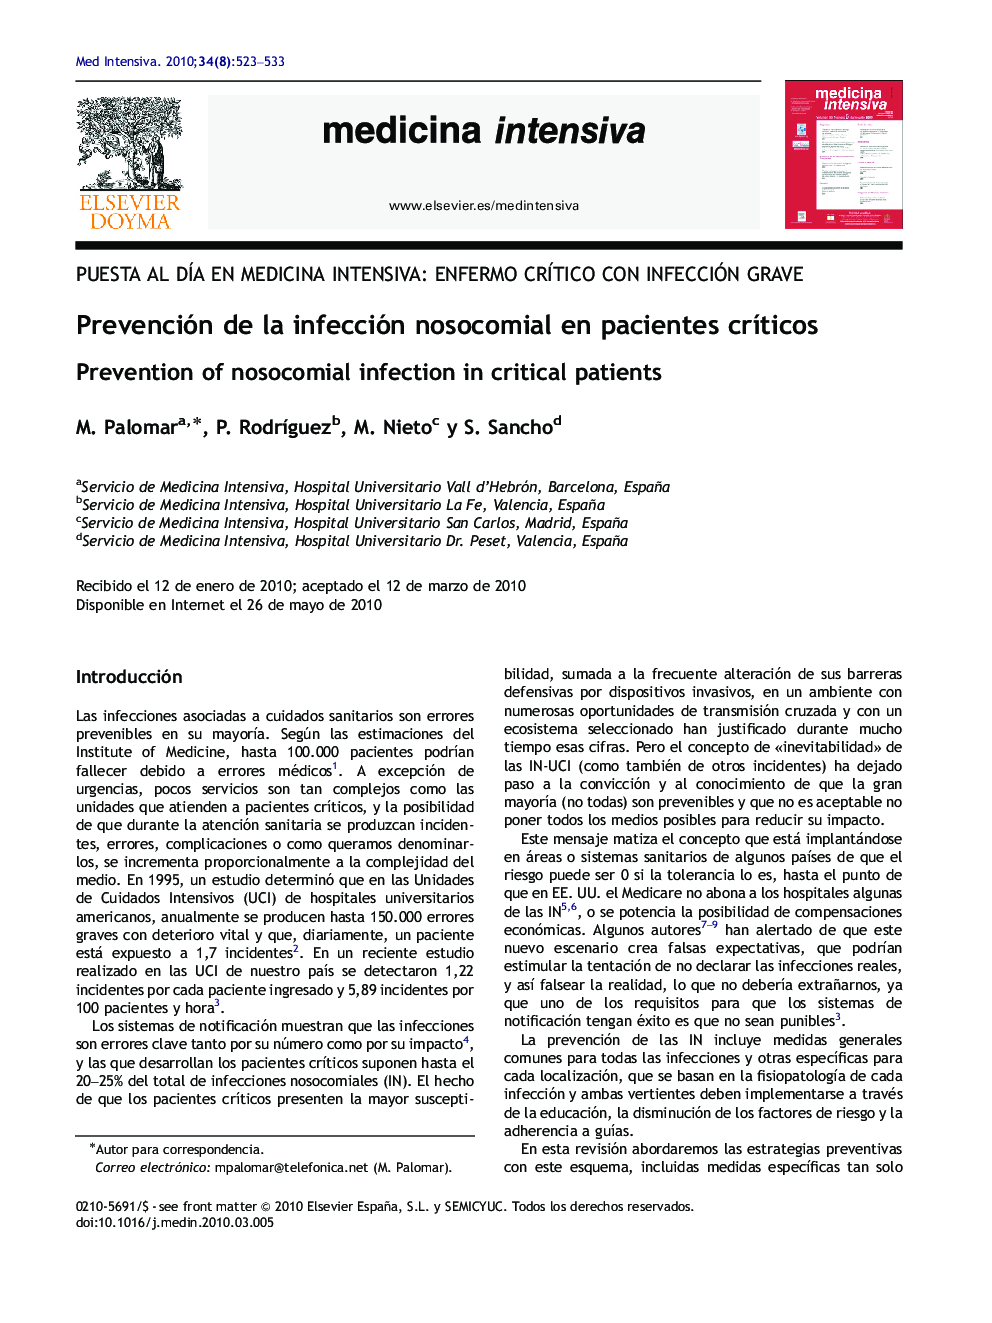 Prevención de la infección nosocomial en pacientes crÃ­ticos